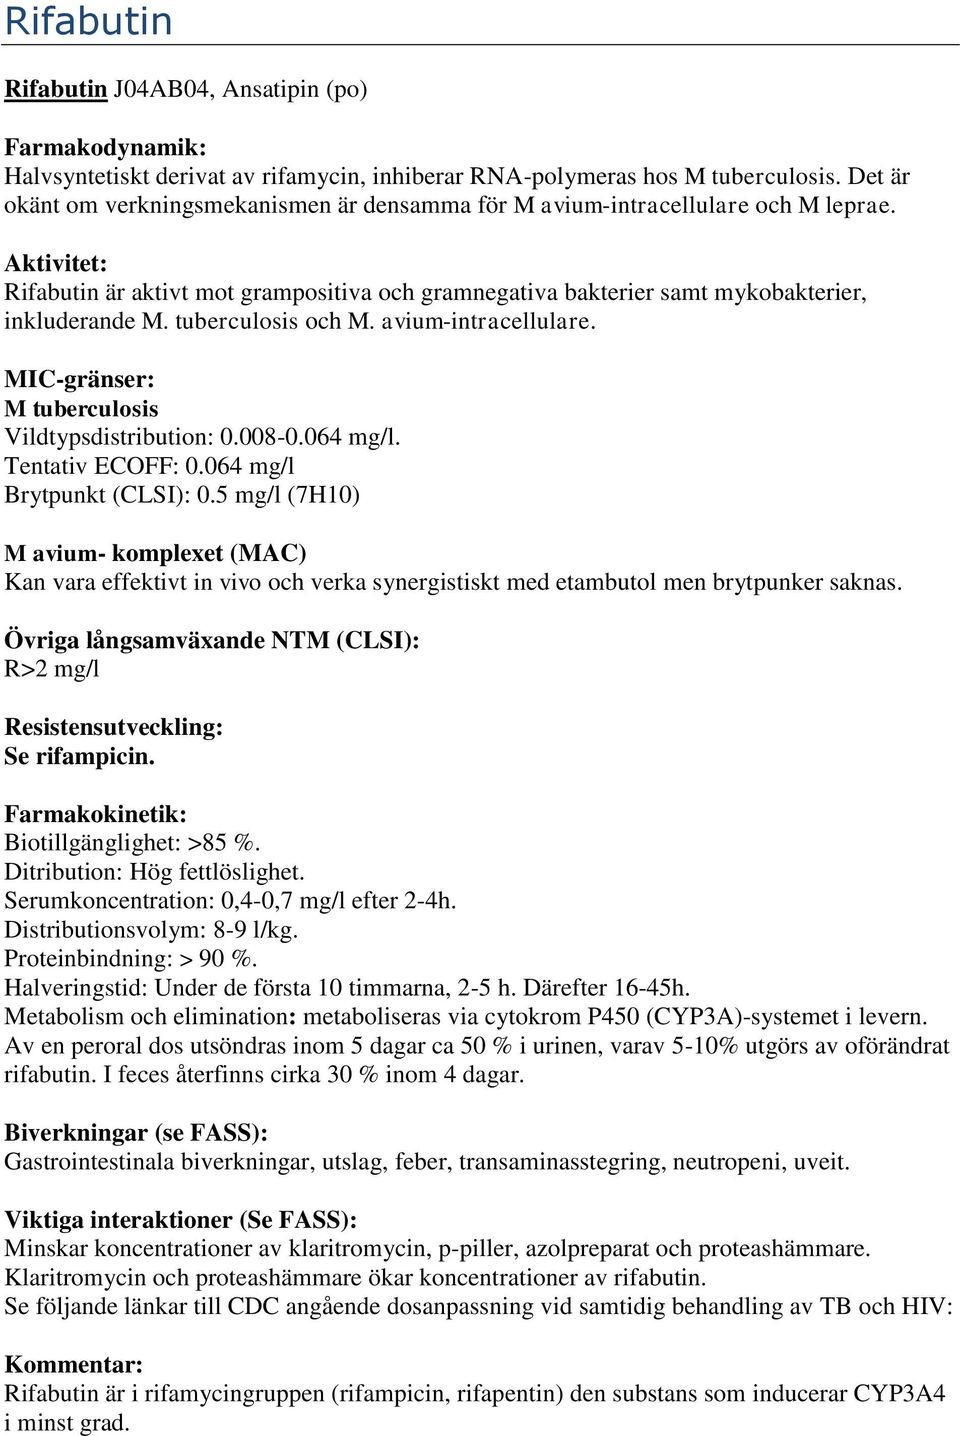 tuberculosis och M. avium-intracellulare. Vildtypsdistribution: 0.008-0.064 mg/l. Tentativ ECOFF: 0.064 mg/l Brytpunkt (CLSI): 0.